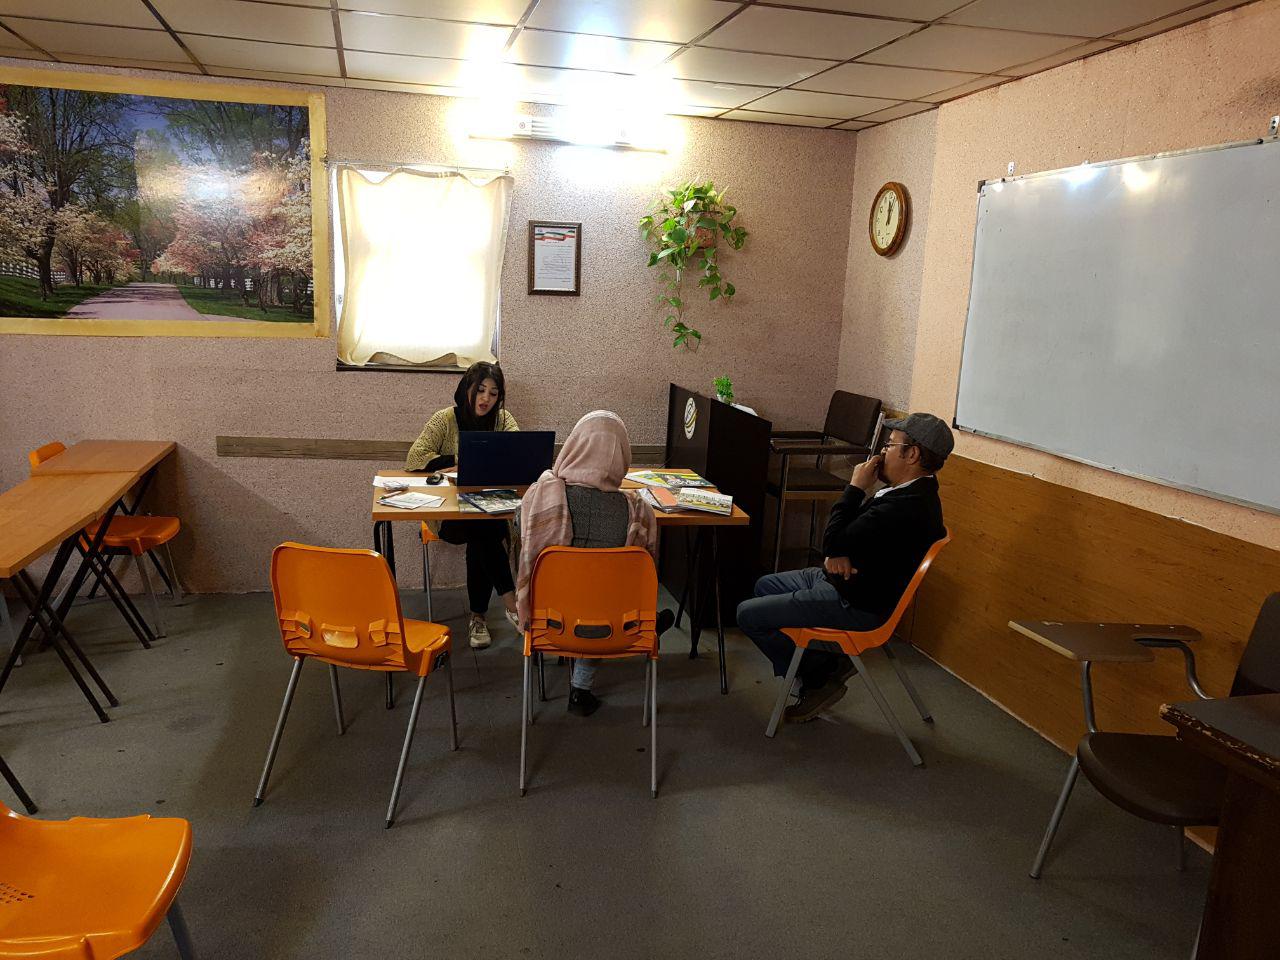 جلسه پرسش و پاسخ در موسسه زبان بهار شیراز